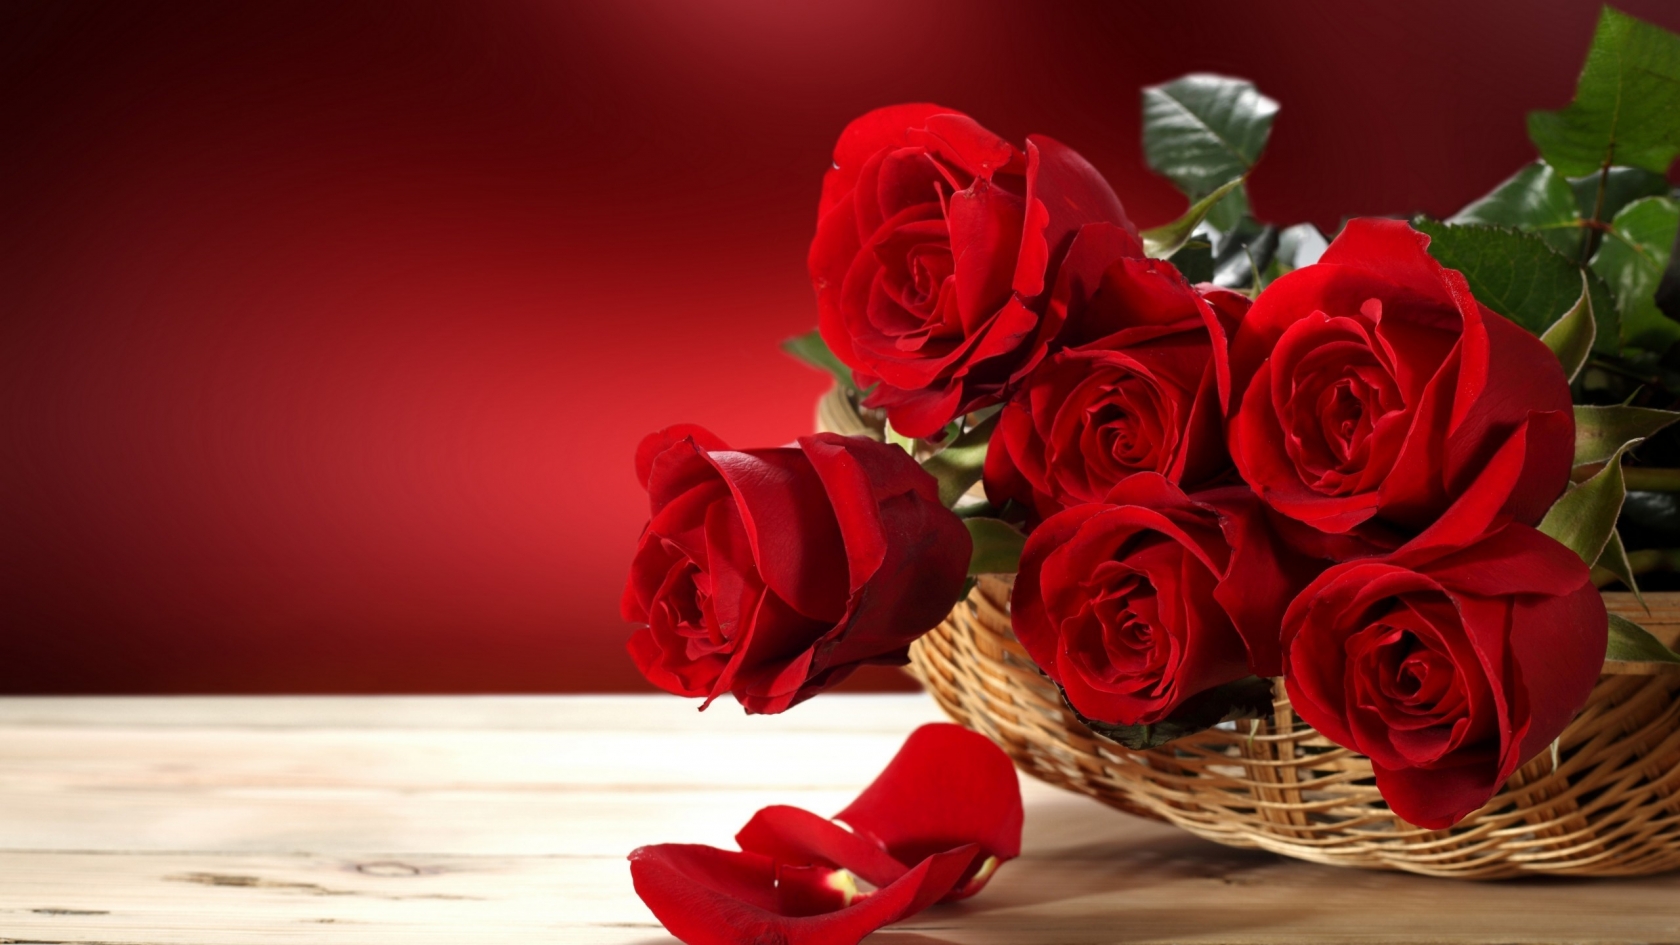 Fresh Red Roses for 1680 x 945 HDTV resolution